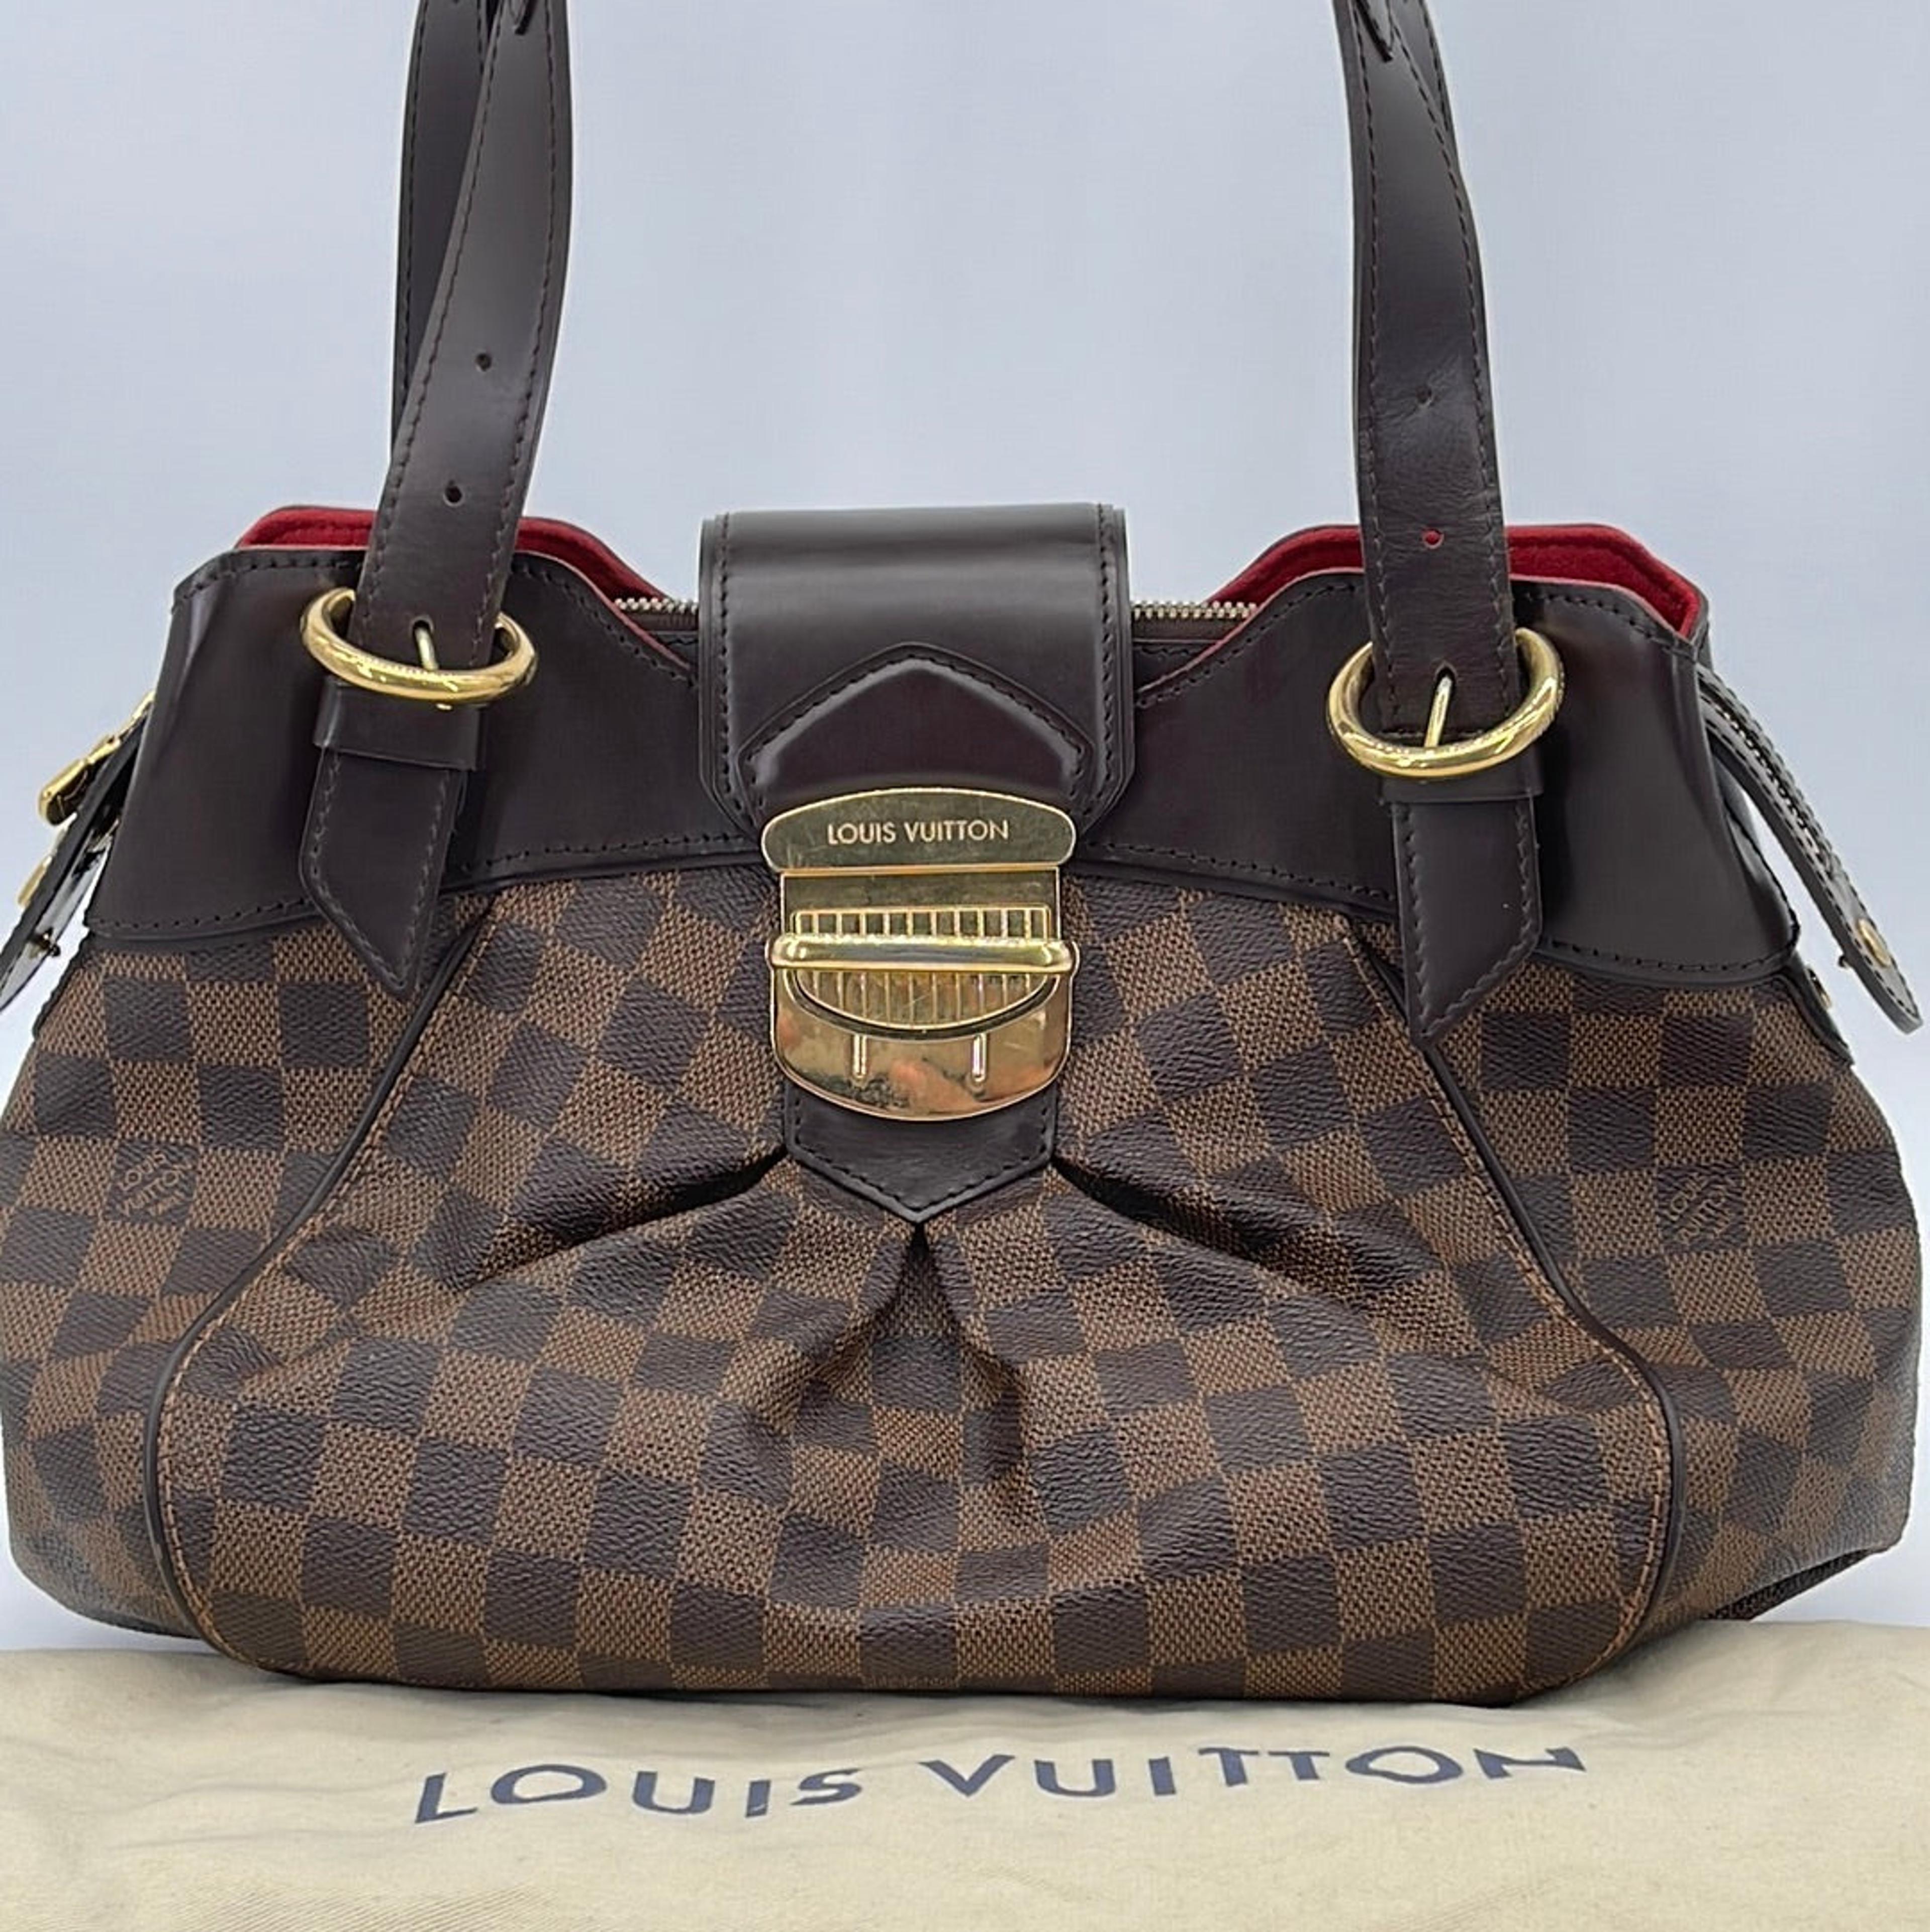 How to Spot a Fake: Louis Vuitton Damier Ebene Sistina